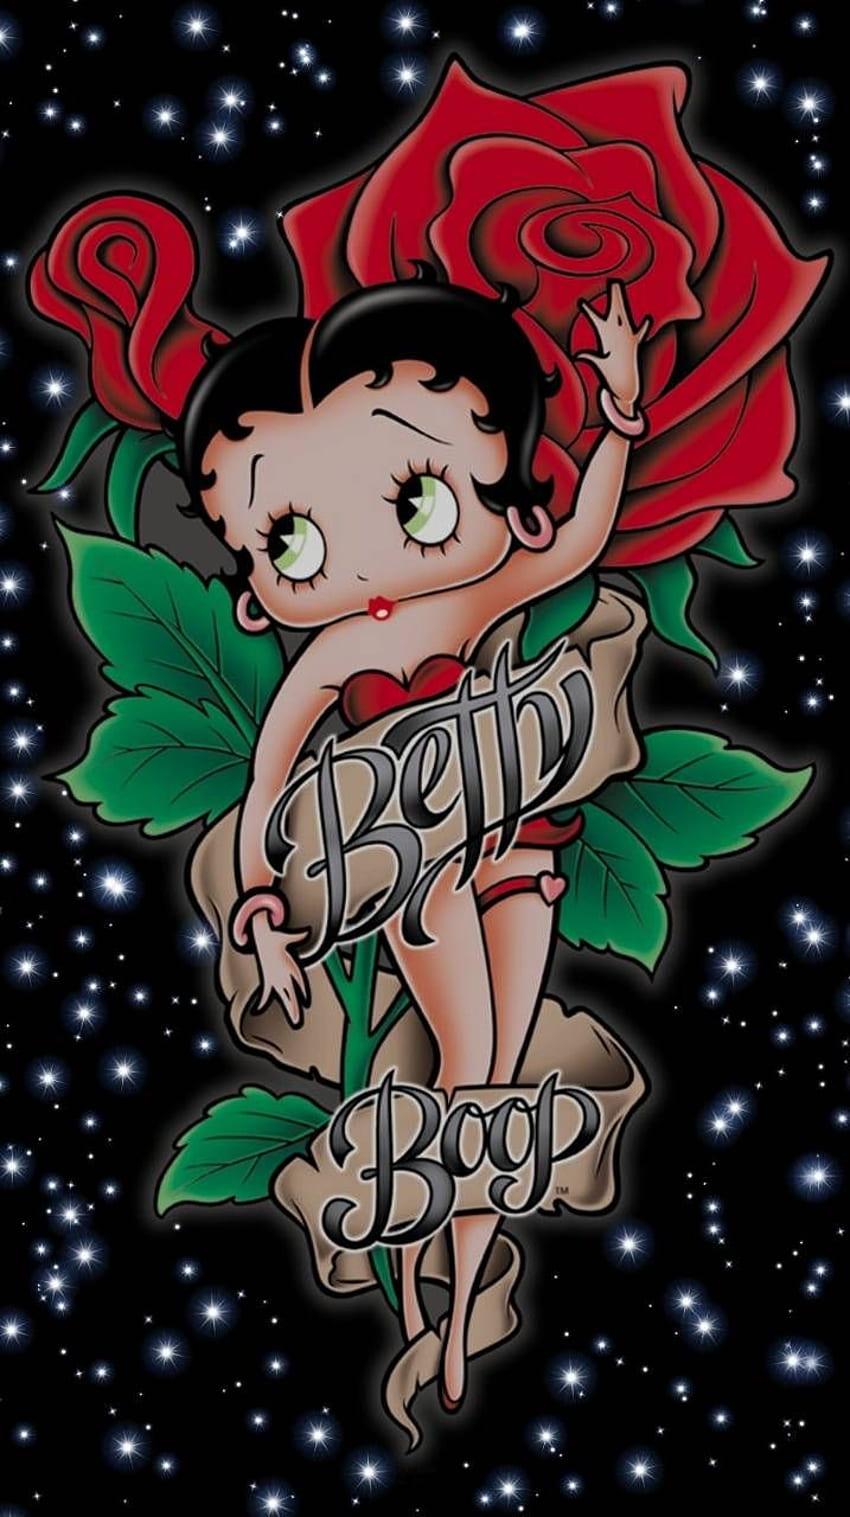 Betty Boop subió por Glendalizz69 - c1 ahora. Explore millones de apuestas populares. Betty boop , Tatuajes de betty boop, Betty boop fondo de pantalla del teléfono